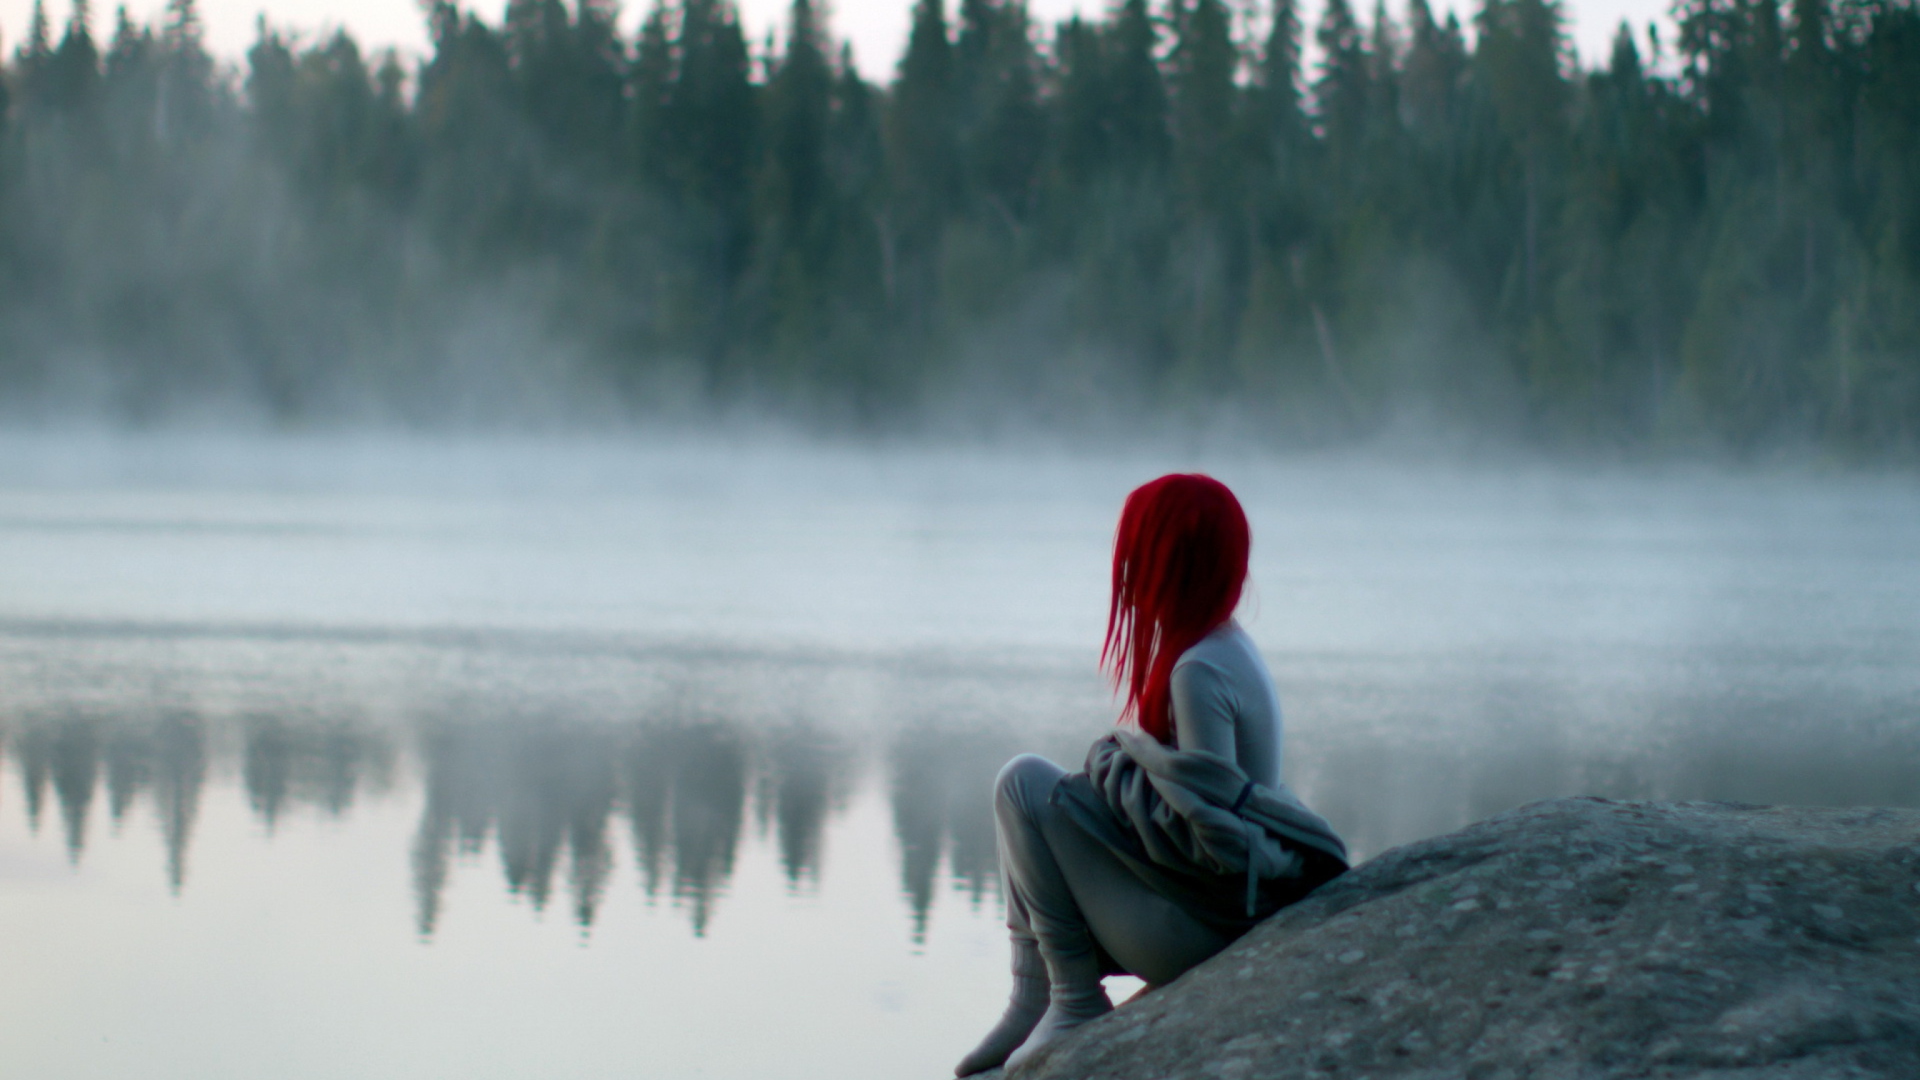 Обои Girl With Red Hair And Lake Fog 1920x1080